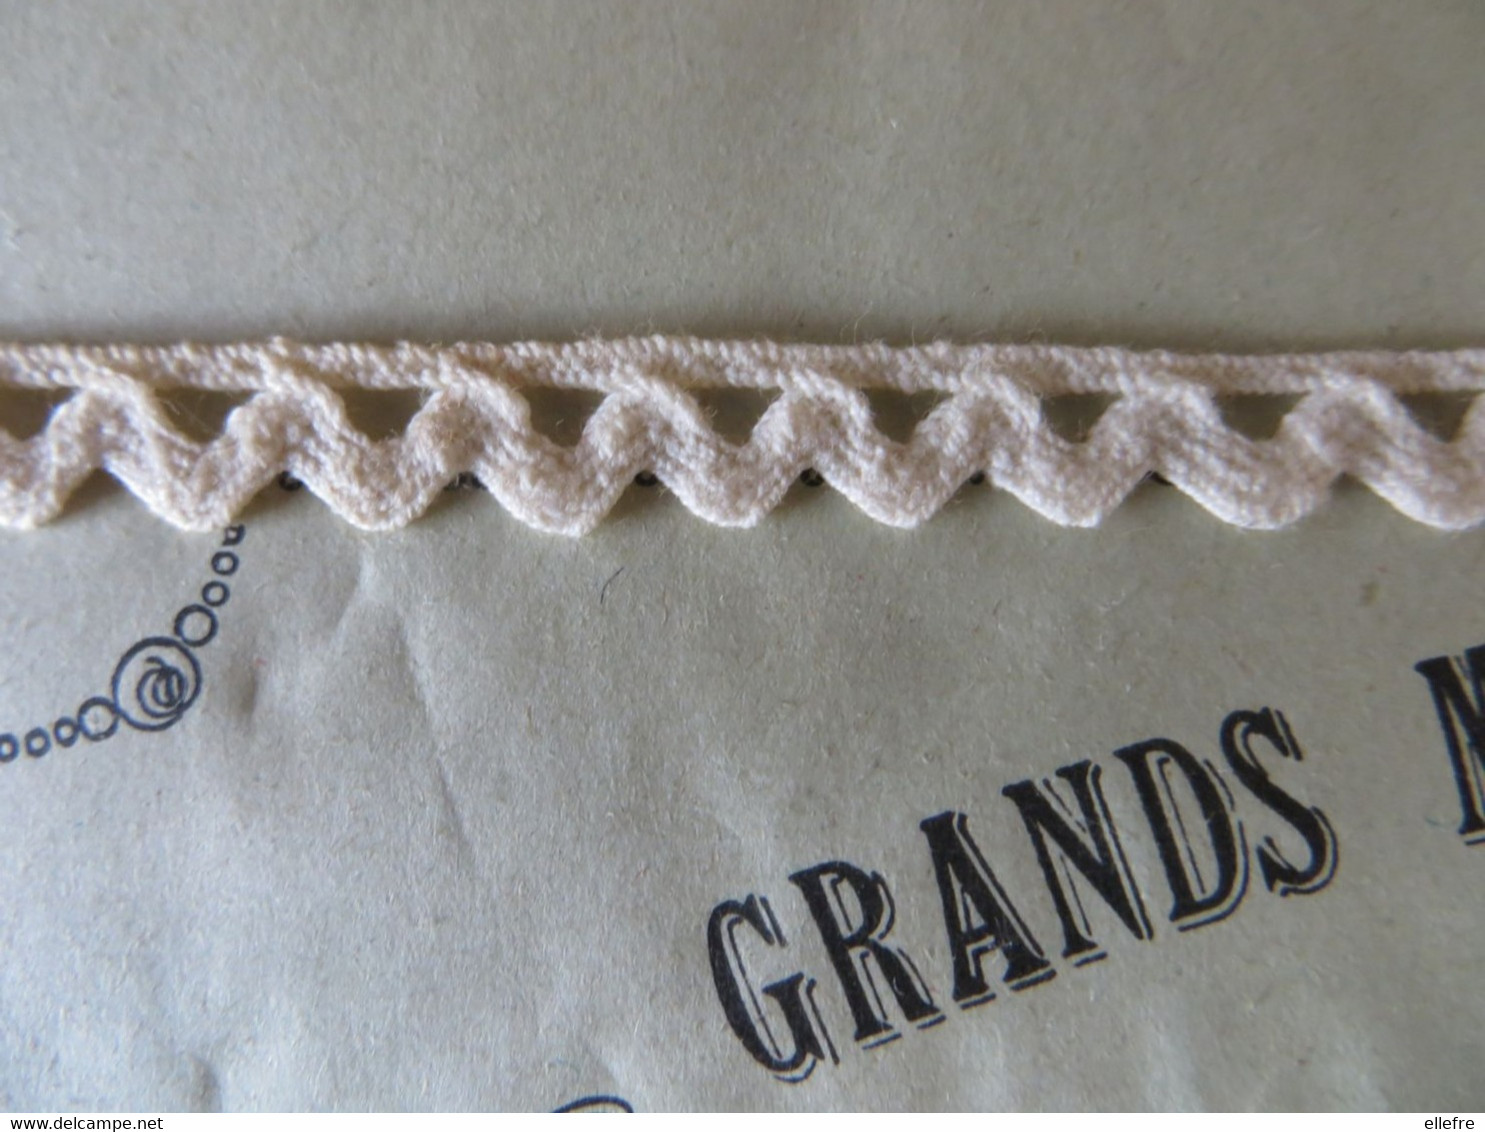 Grands Magasins De La Samaritaine  Bordure Piqué De Coton Complet  Emballage D'origine Comptoir Des Ouvrages De Dames - Dentelles Et Tissus